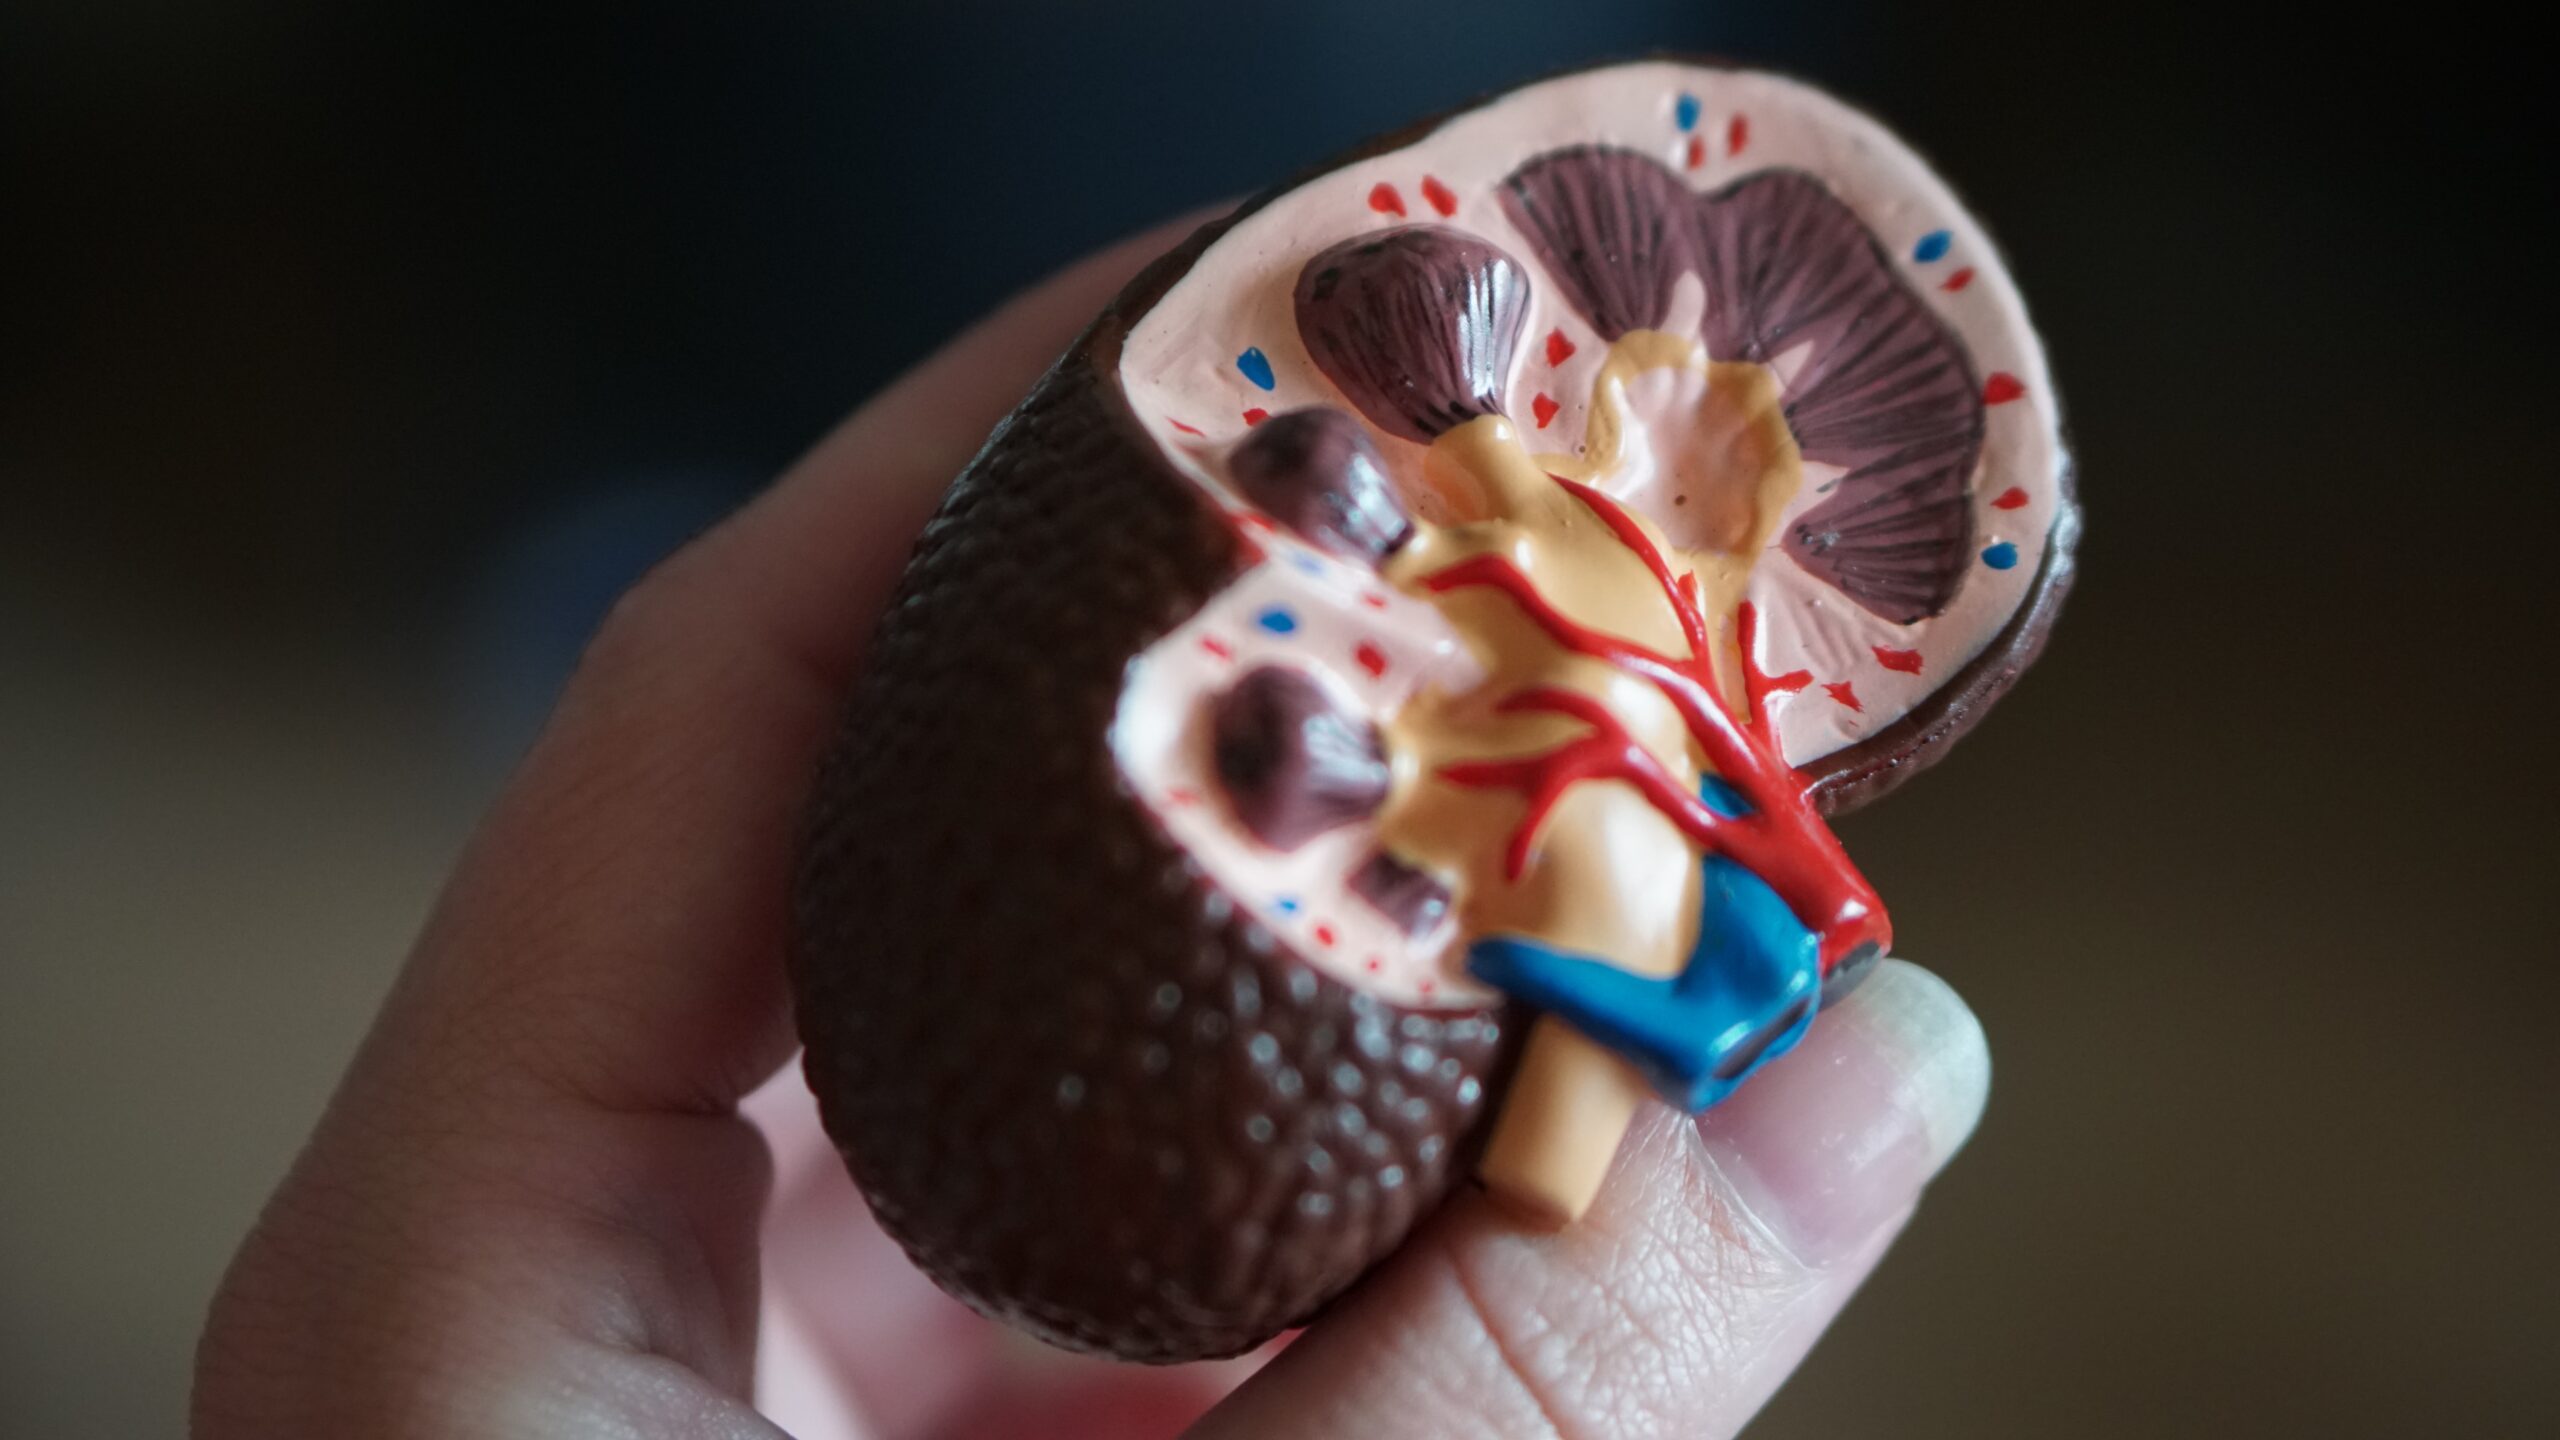 Hand holding model kidney